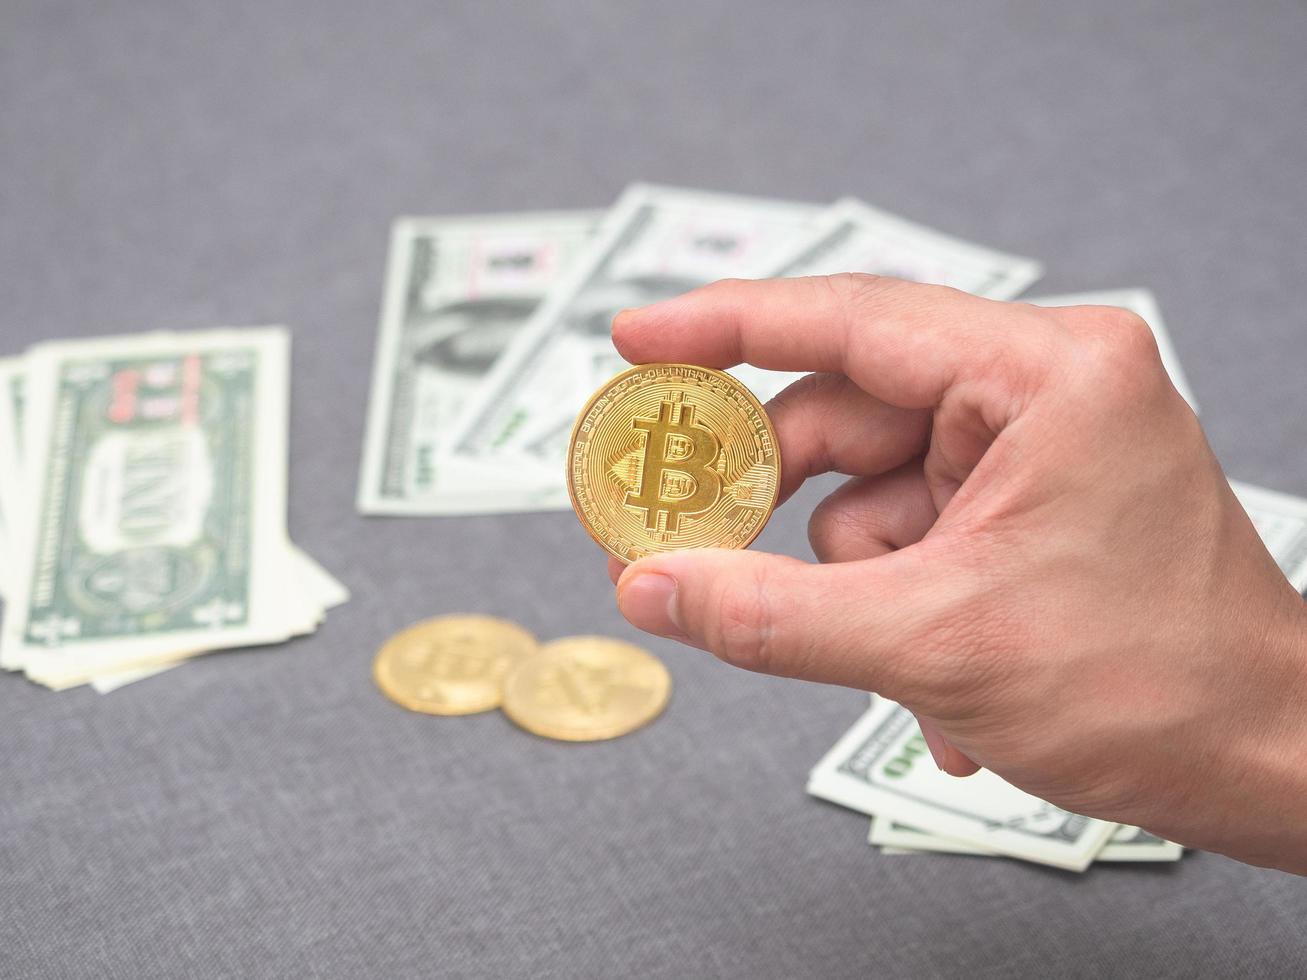 mano sosteniendo bitcoin dorado y fondo de dinero foto